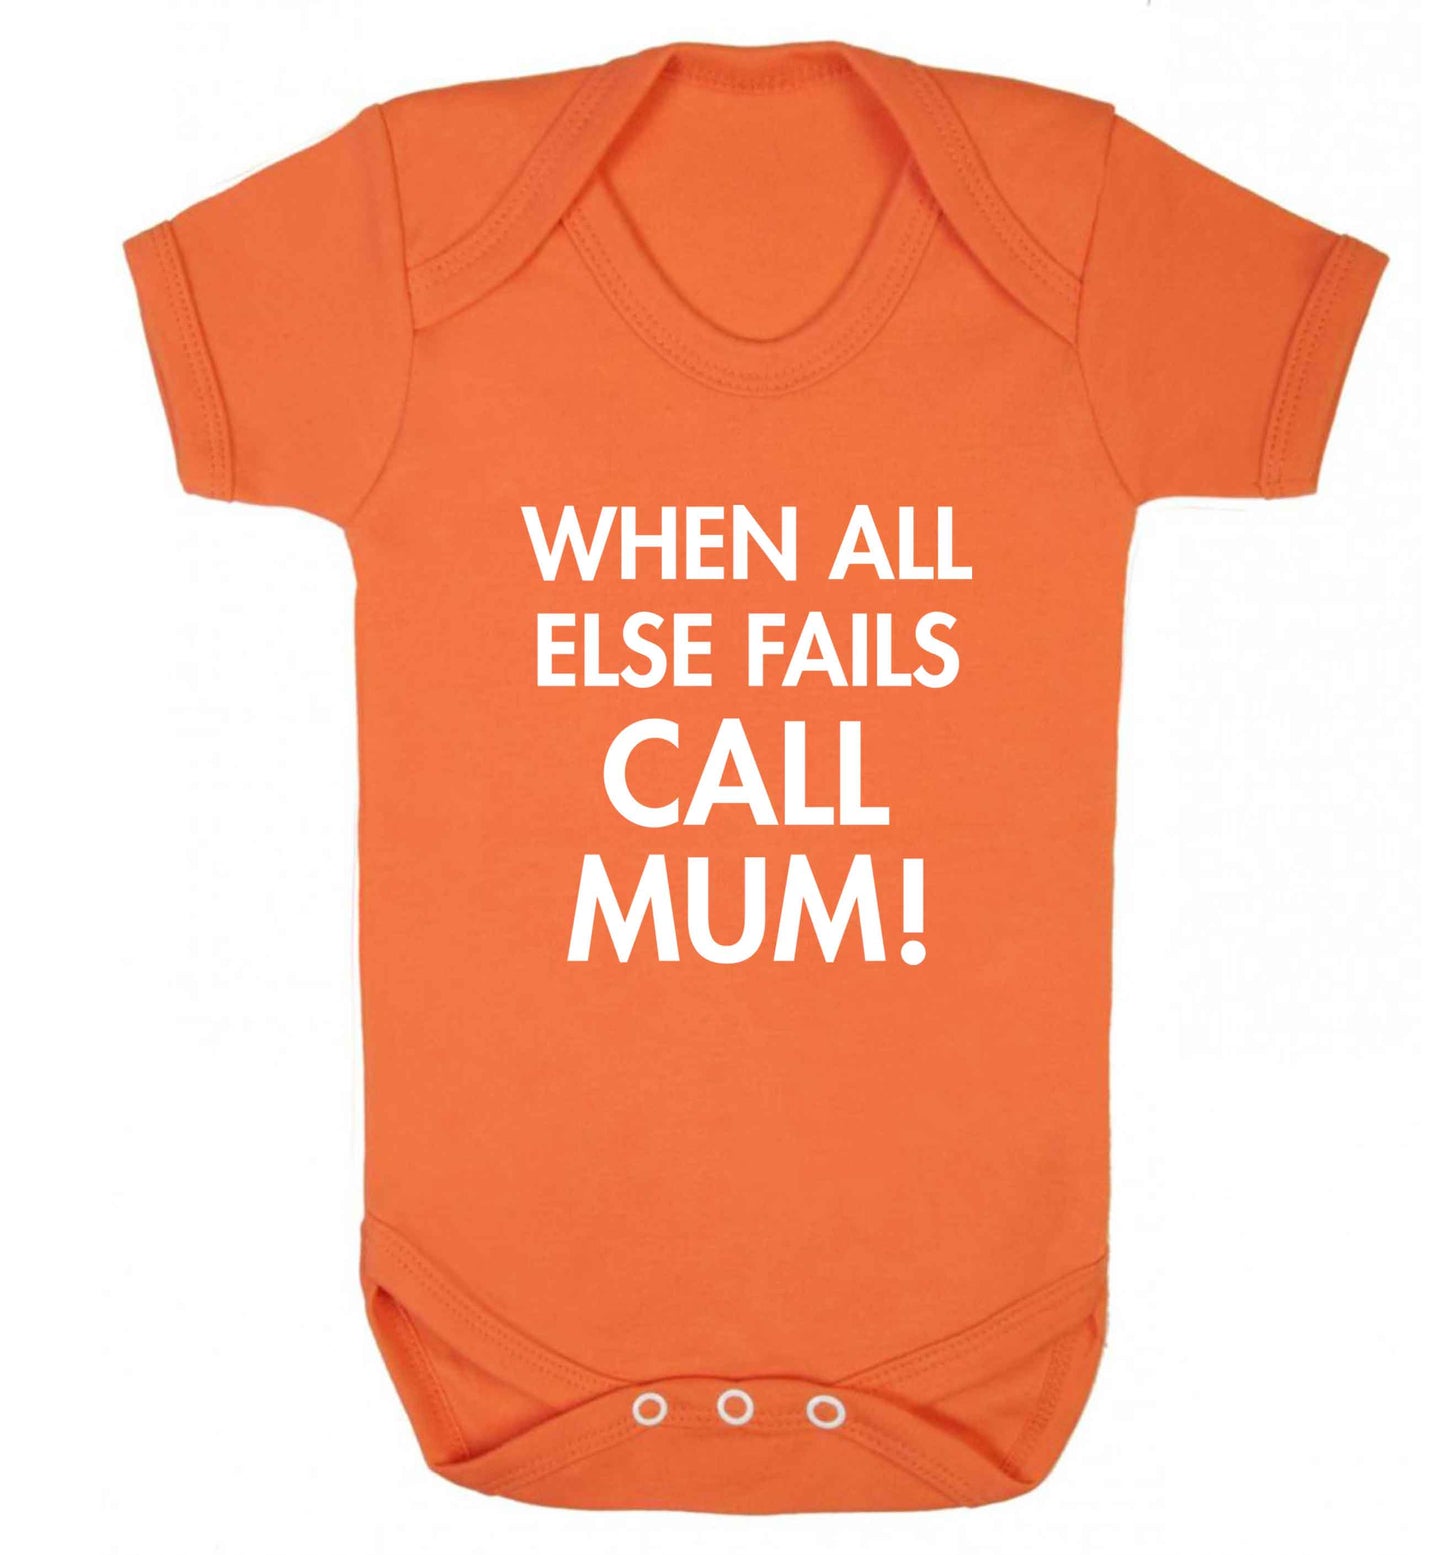 When all else fails call mum! baby vest orange 18-24 months